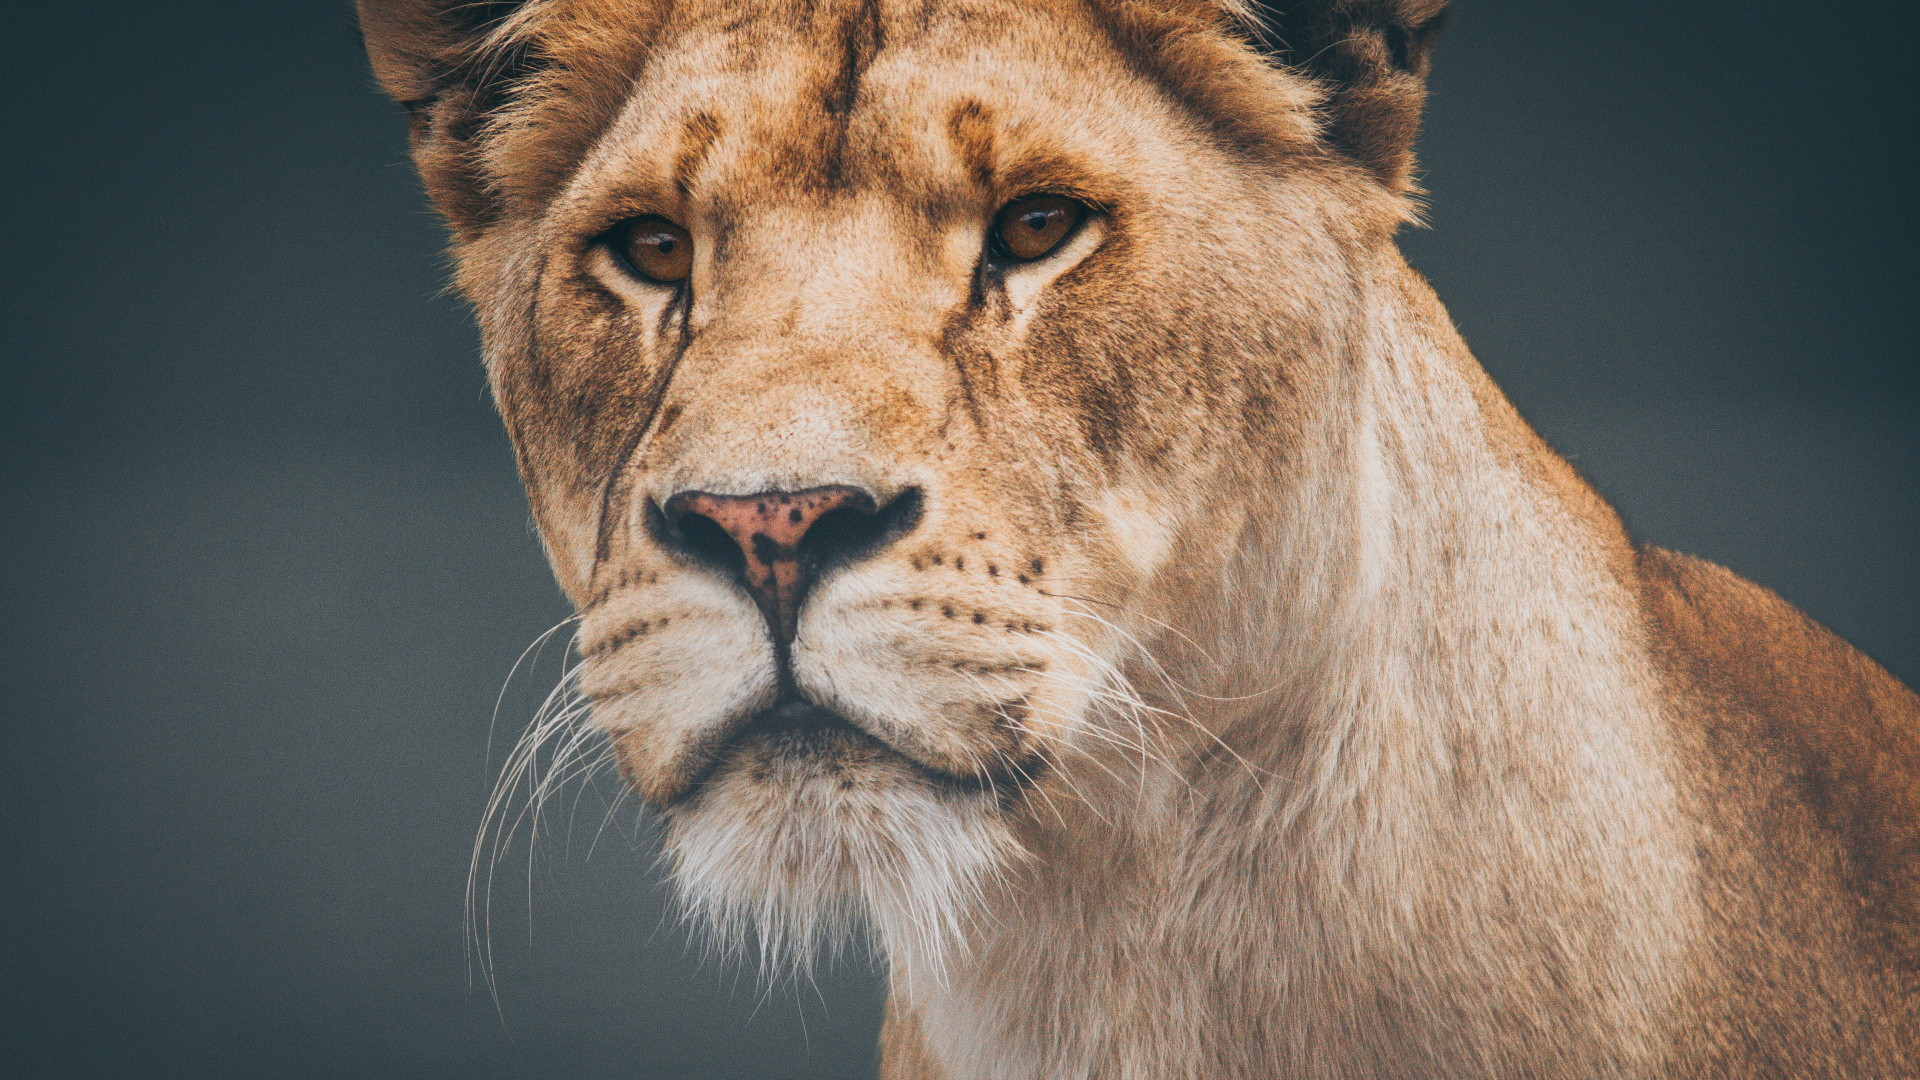 狮子, 野生动物, 陆地动物, 头发, 猫科 壁纸 1920x1080 允许